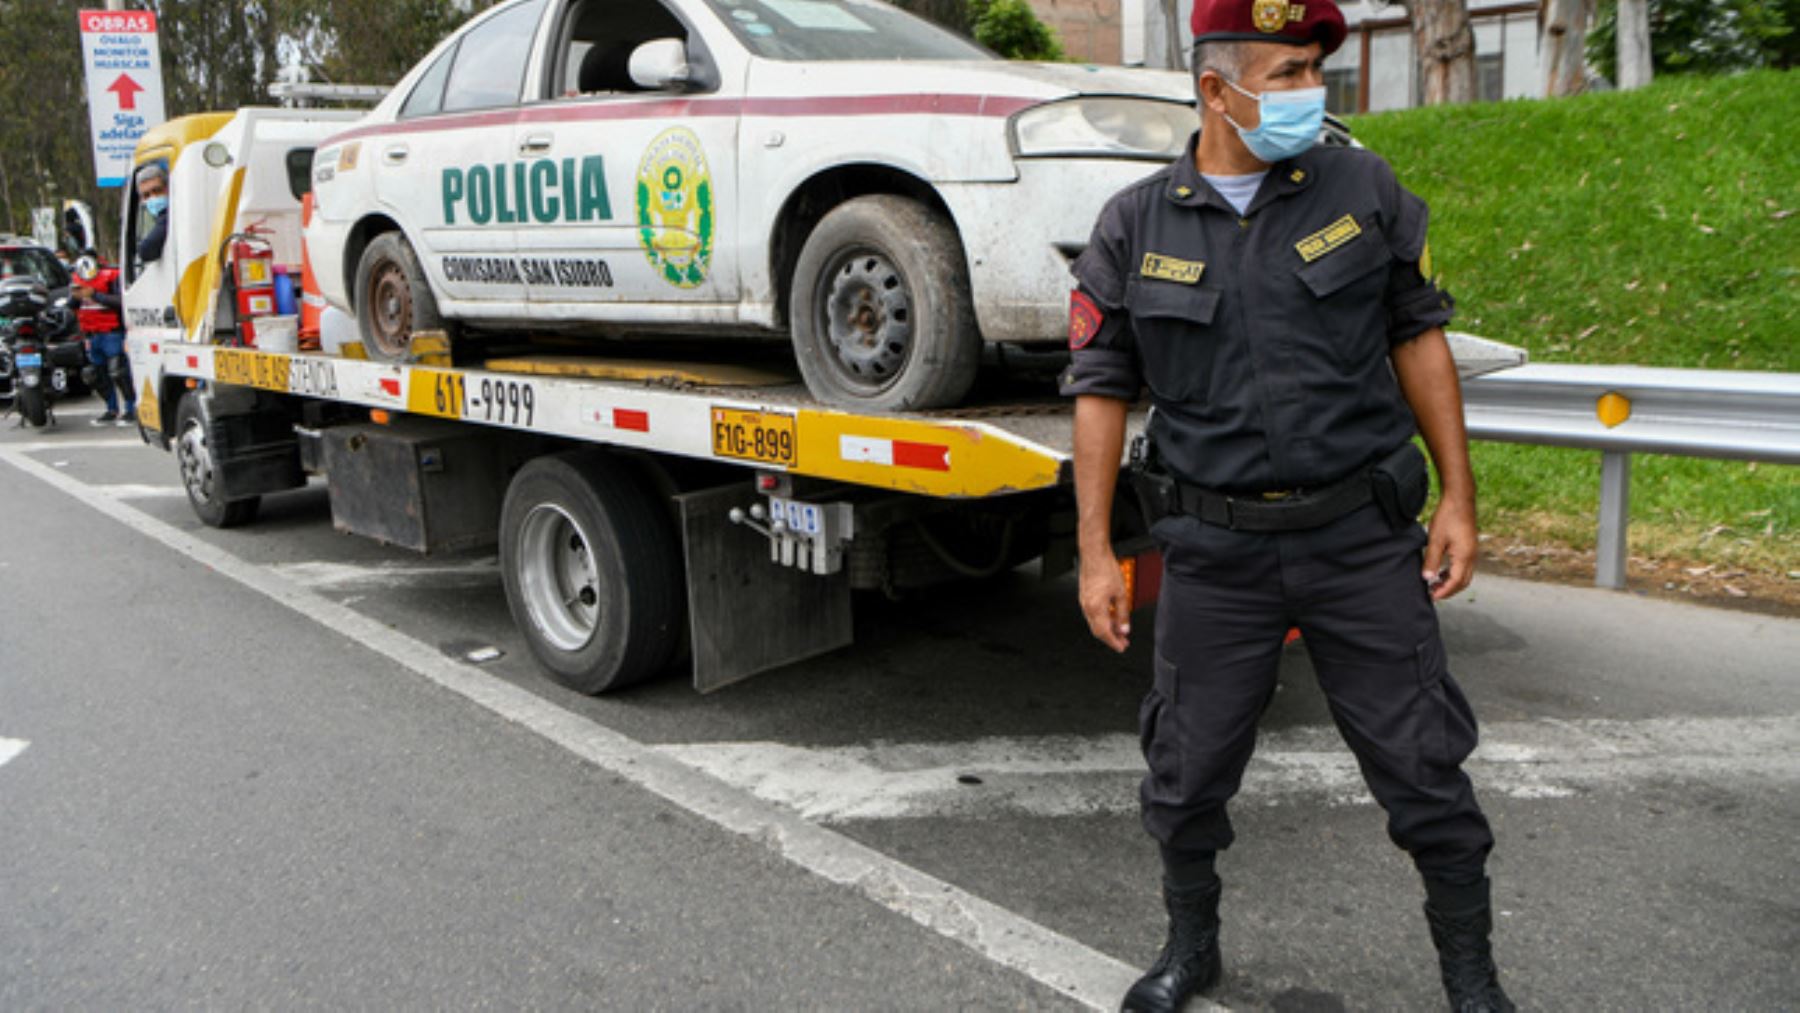 Ministro Guillén dispone traslado de patrulleros inoperativos a depósito PNP